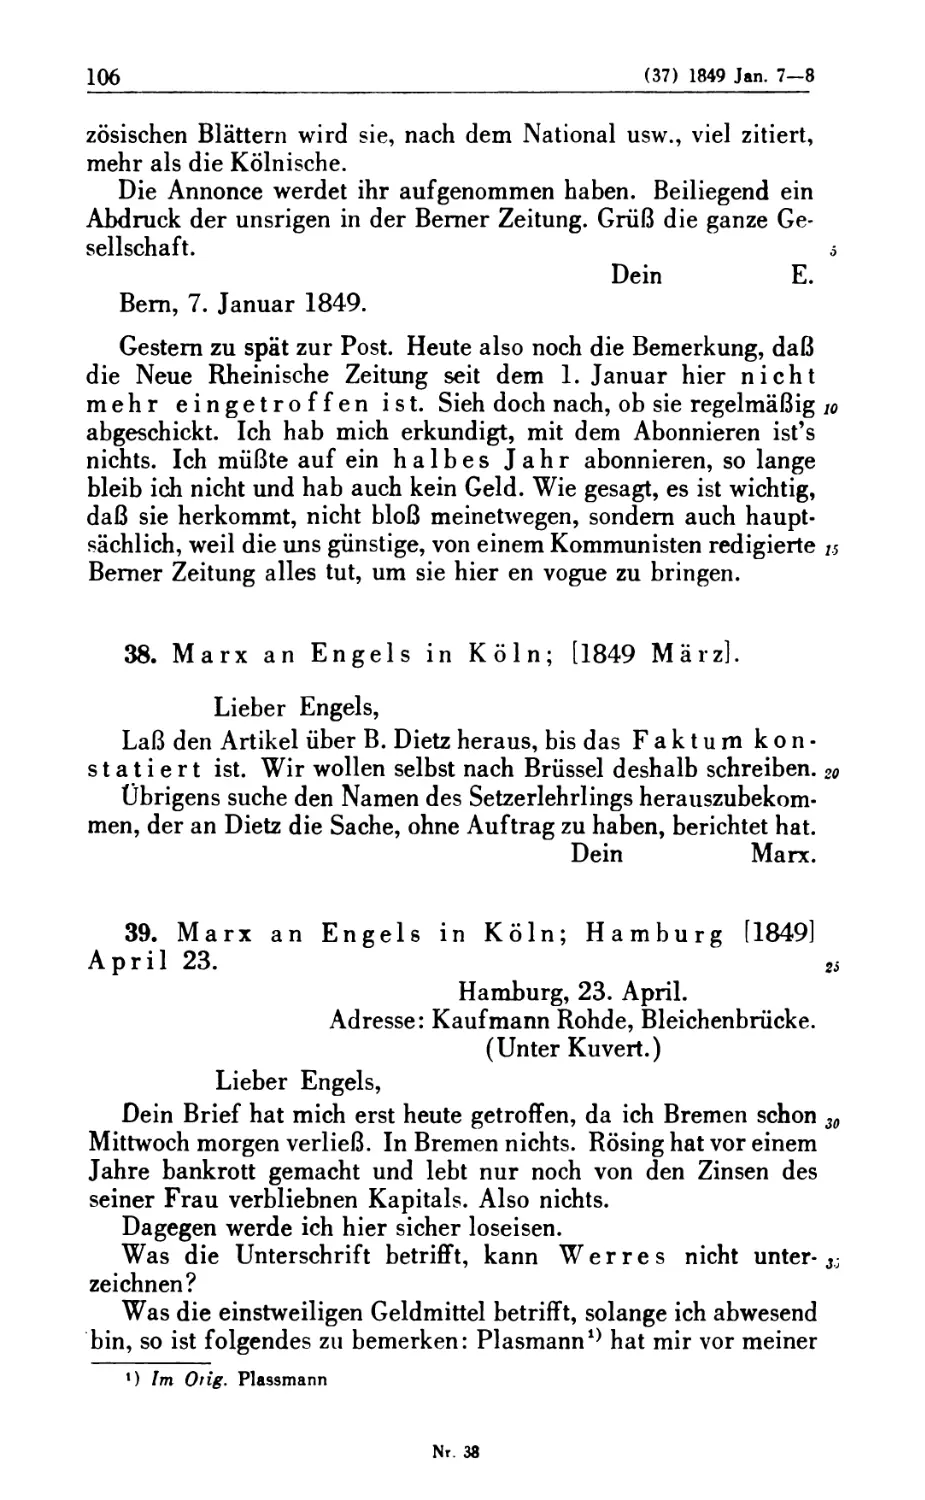 38. Marx an Engels in Köln; [1849 März]
39. Marx an Engels in Köln; Hamburg [1849] April 23